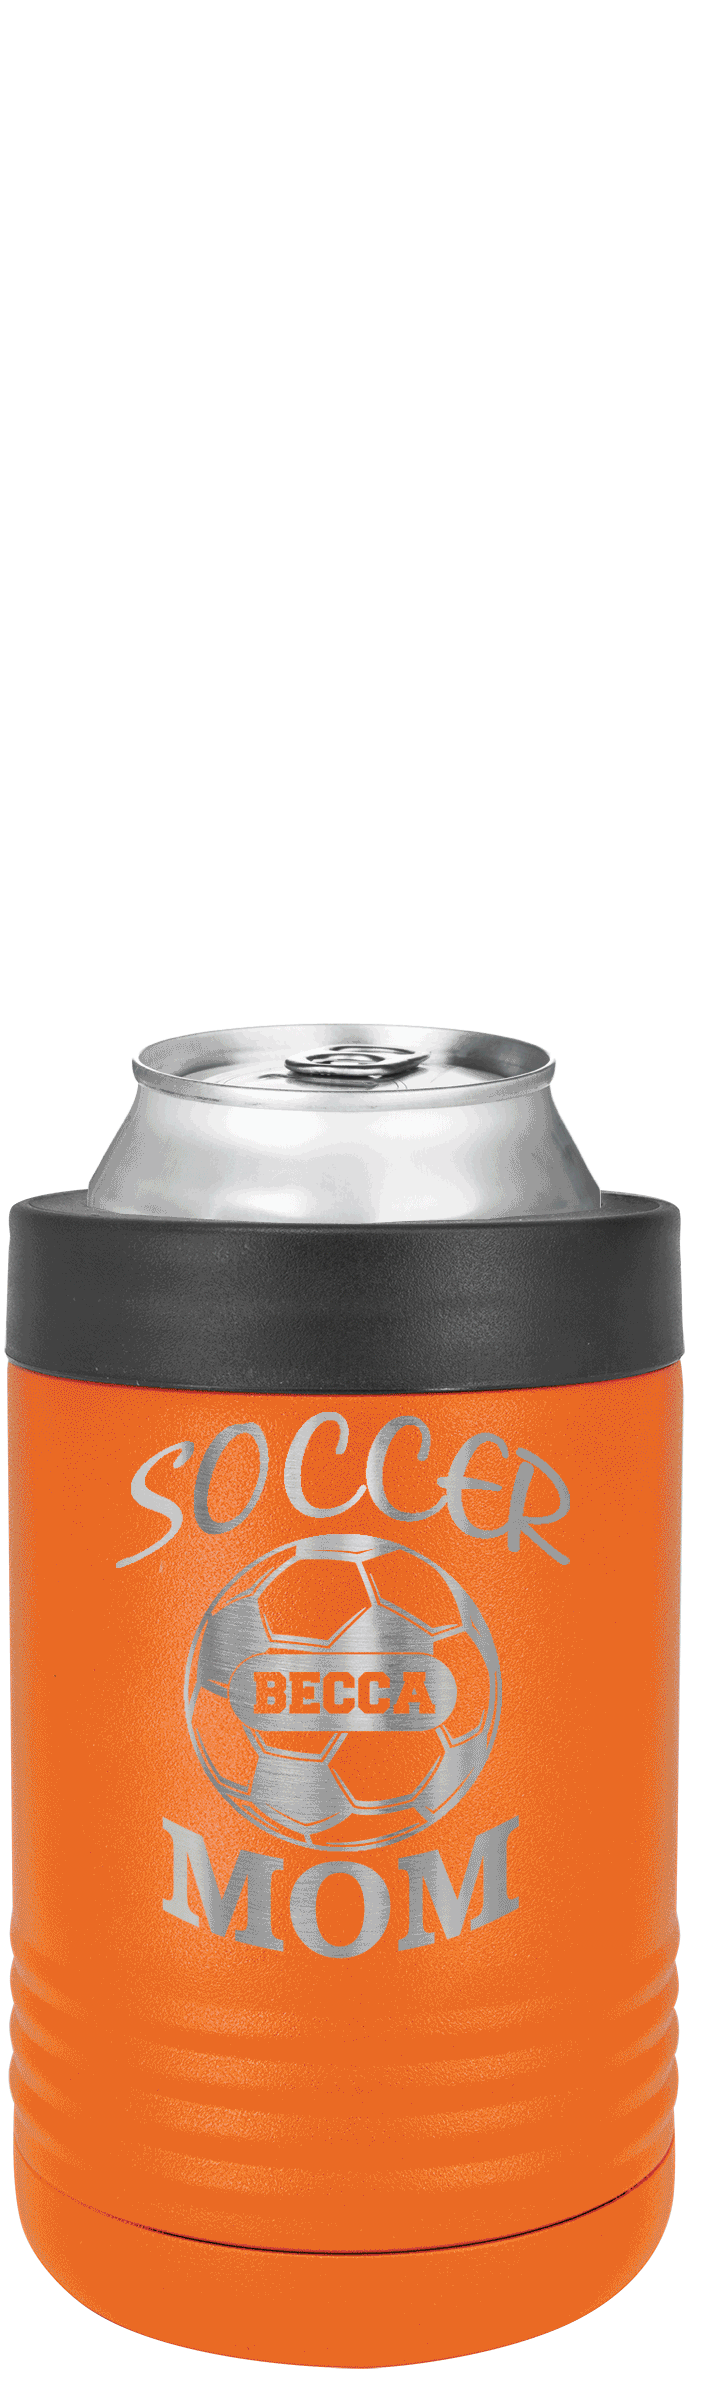 Soccer Beverage Holder